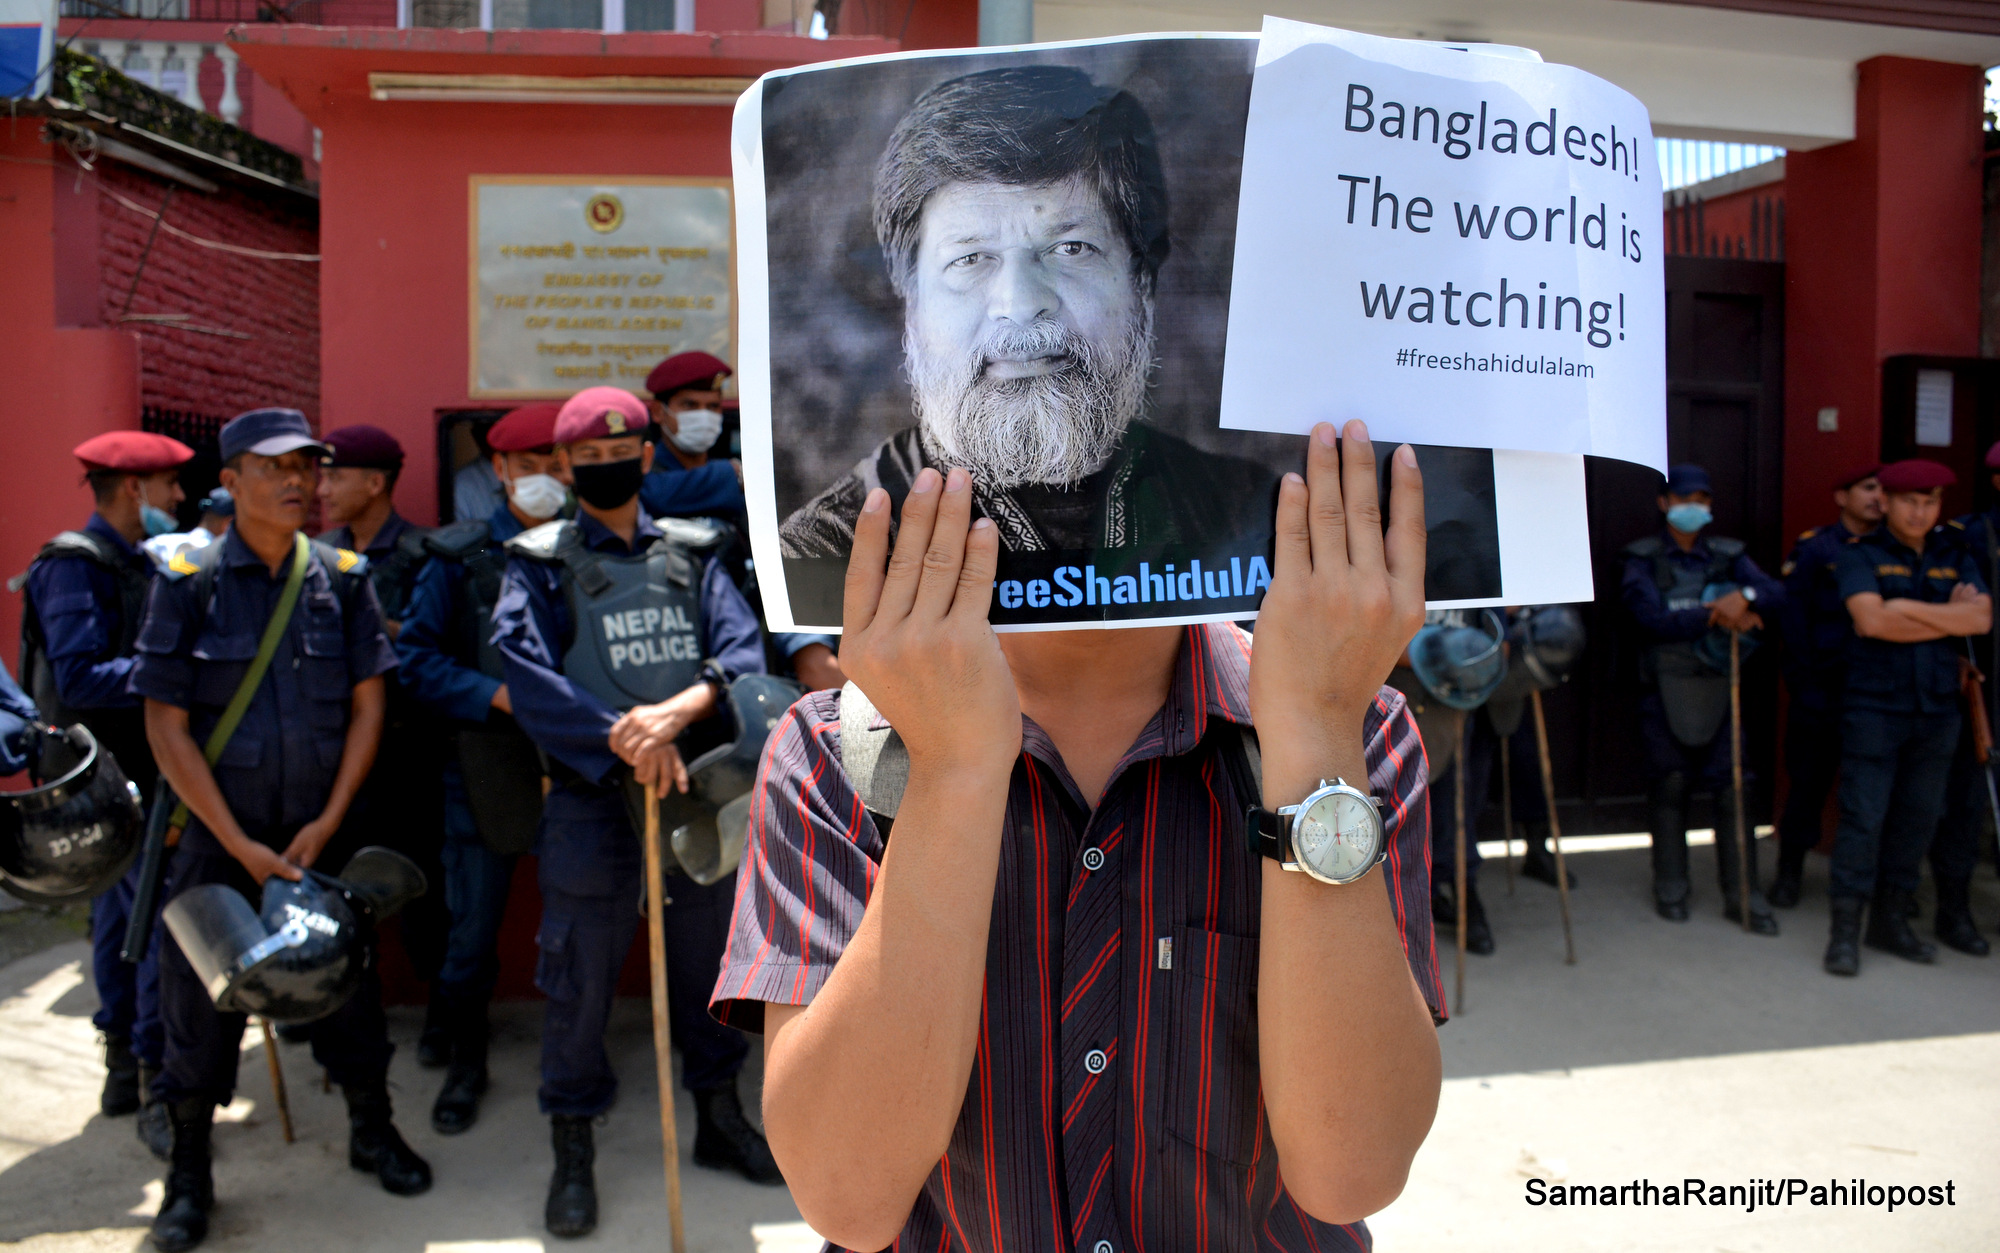 शाहिदुलको रिहाईको माग गर्दै काठमाडौंमा प्रदर्शन, दूतावास अगाडि फोटो पत्रकारको धर्ना